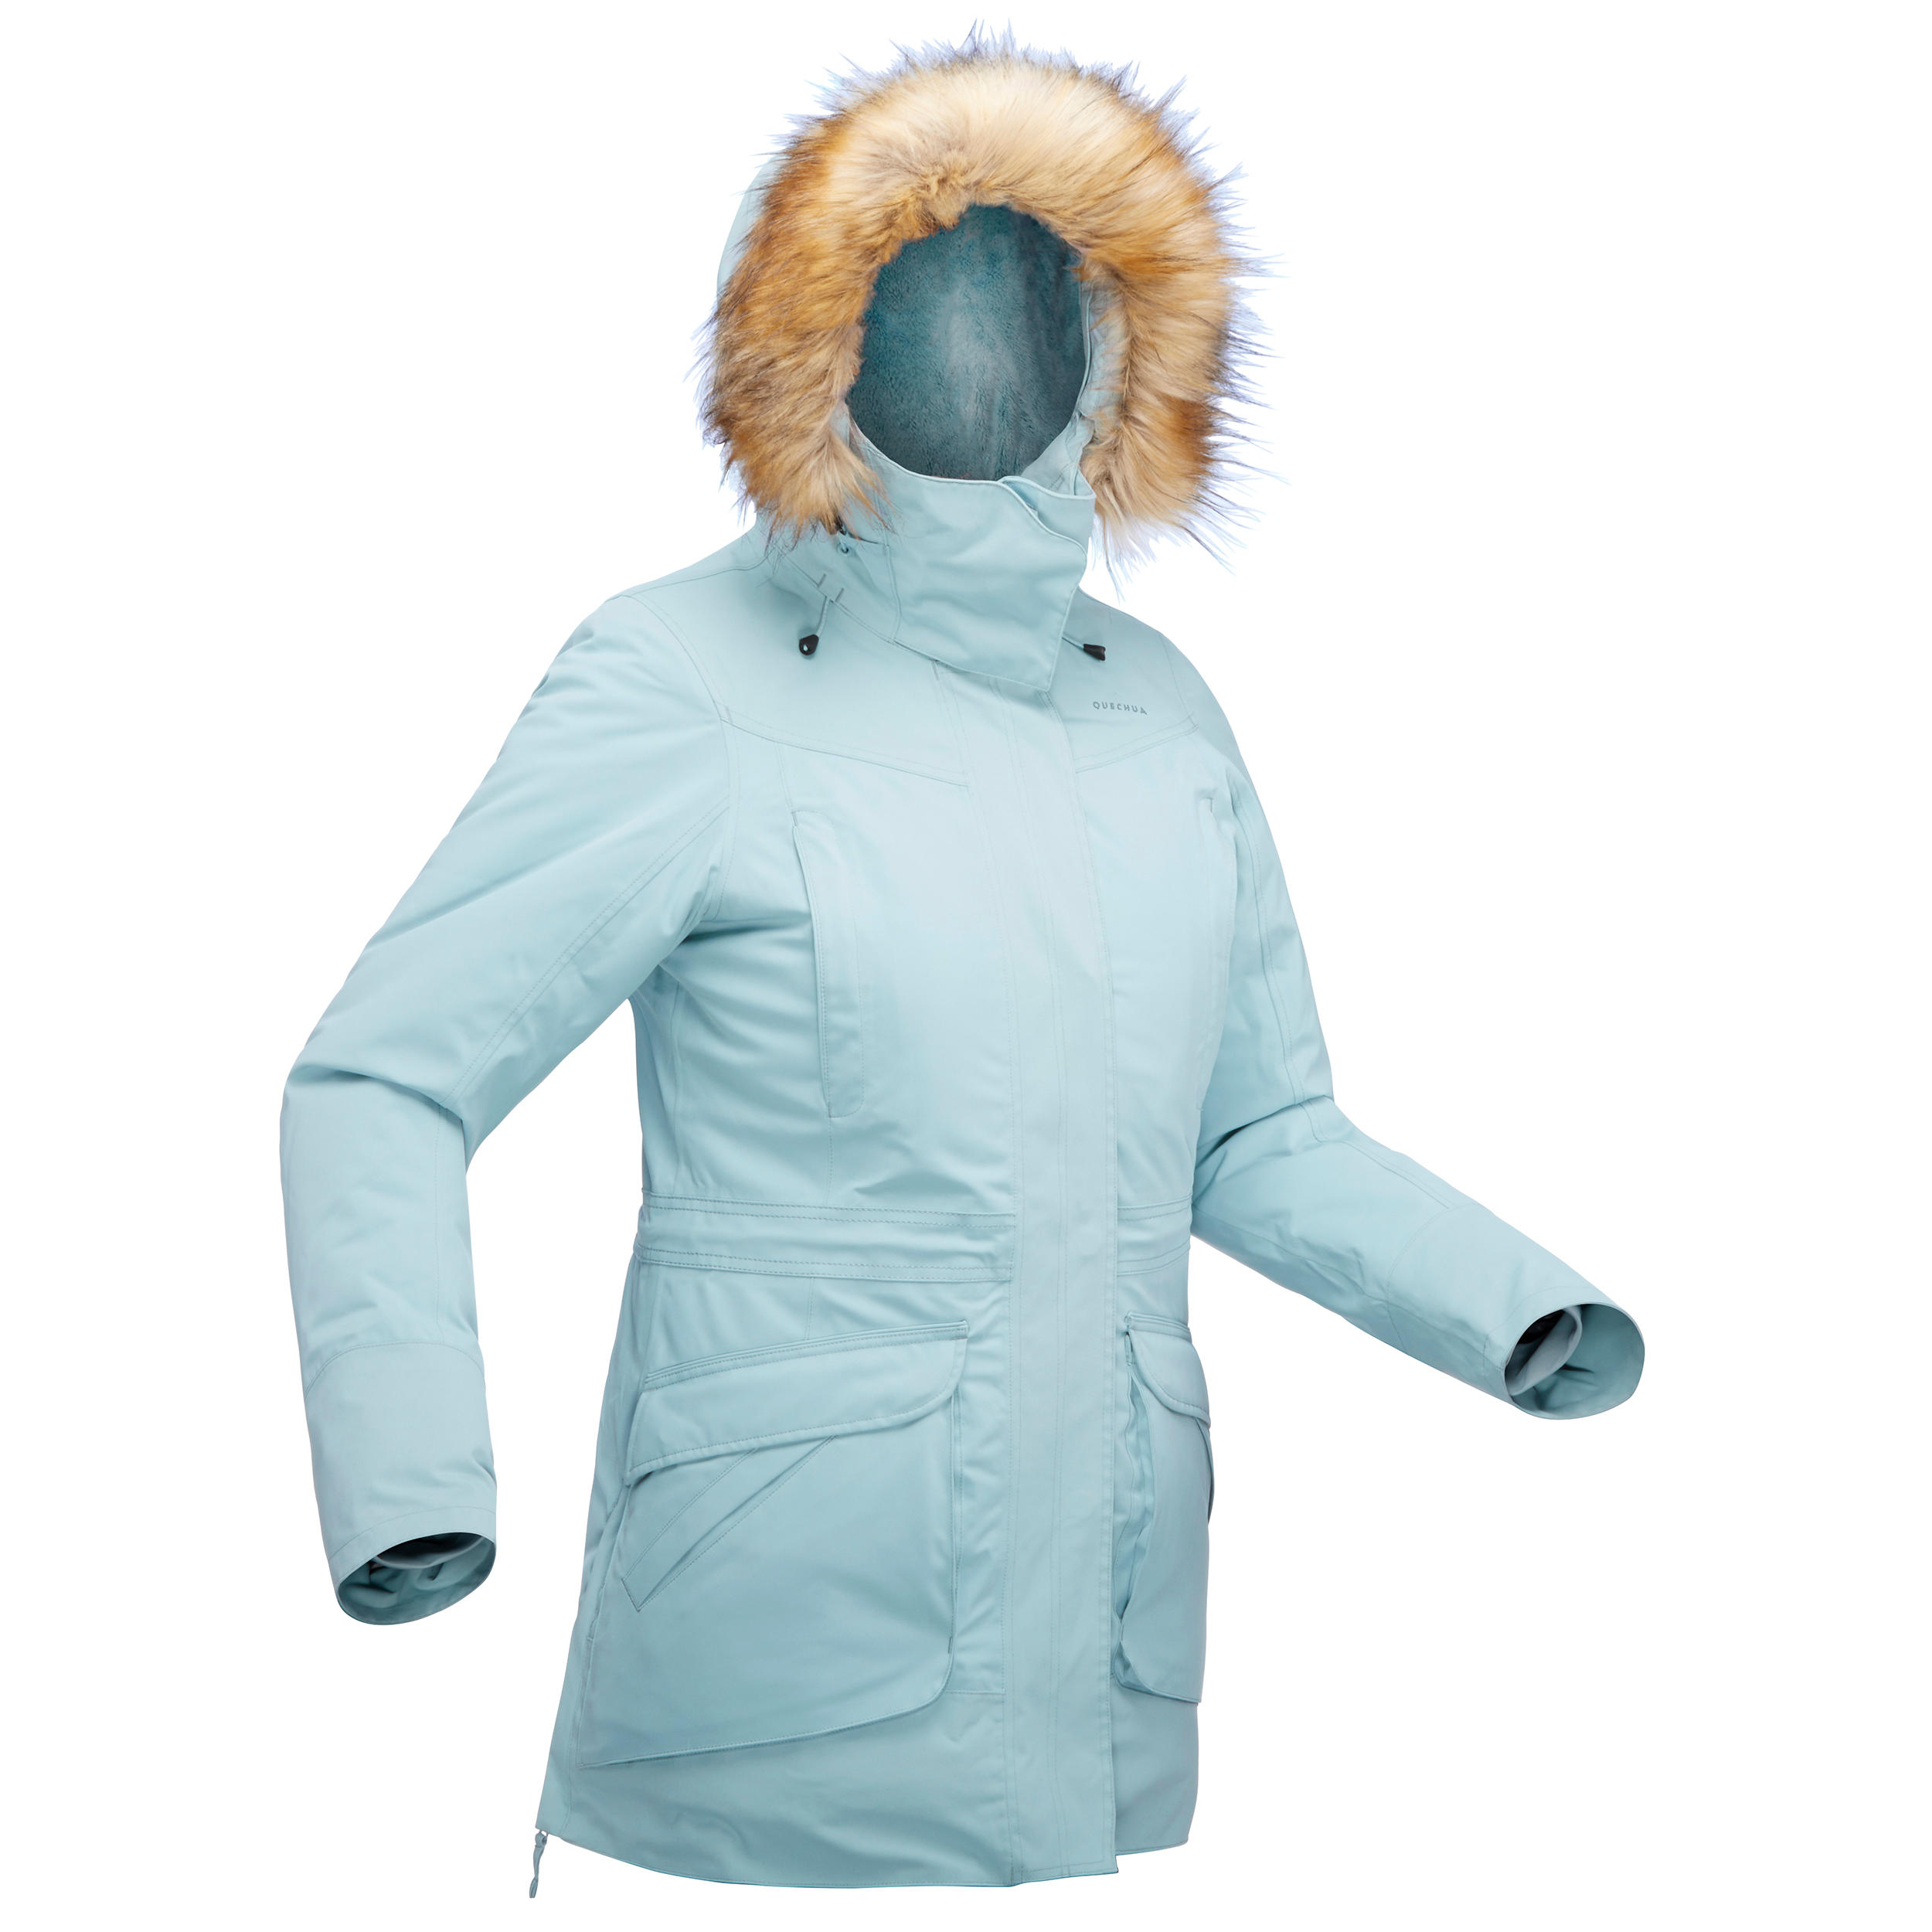 OTEMPEROTEMPER Veste de Ski pour Femme Manteau de Neige pour Femme Coupe-Vent Imperméable Montagne Sweat à Capuche Coupe-Vent Manteau de Neige Chaud Hiver-Vert 